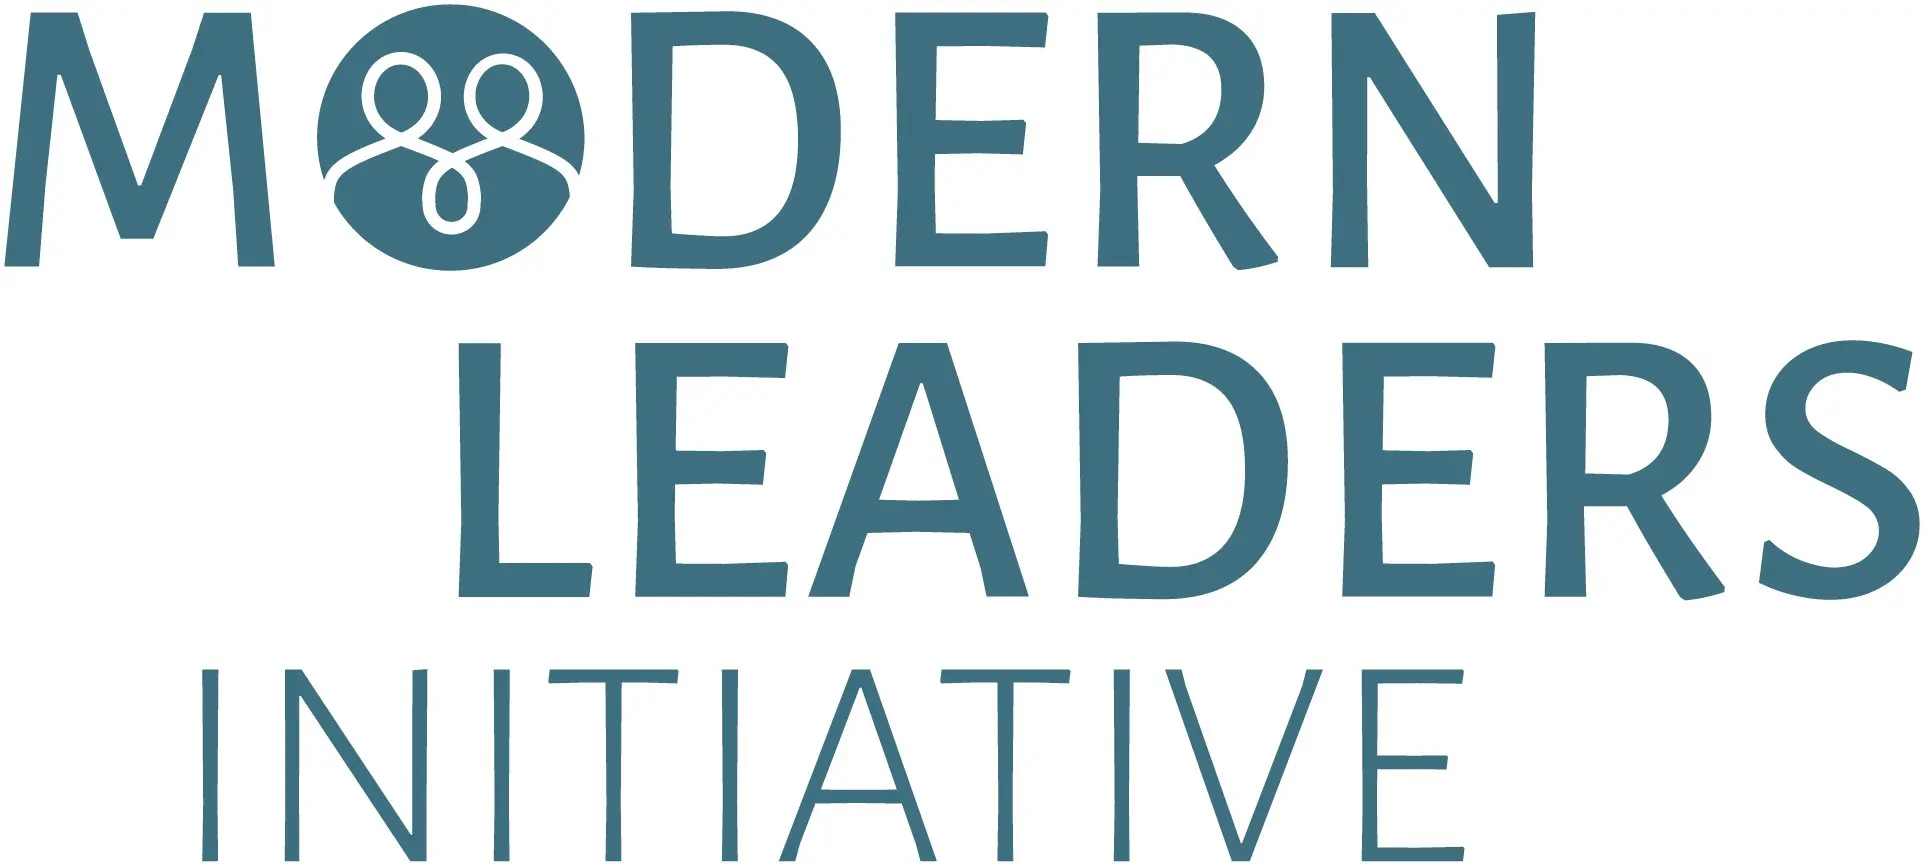 PRCC Modern Leaders Initiative Logo